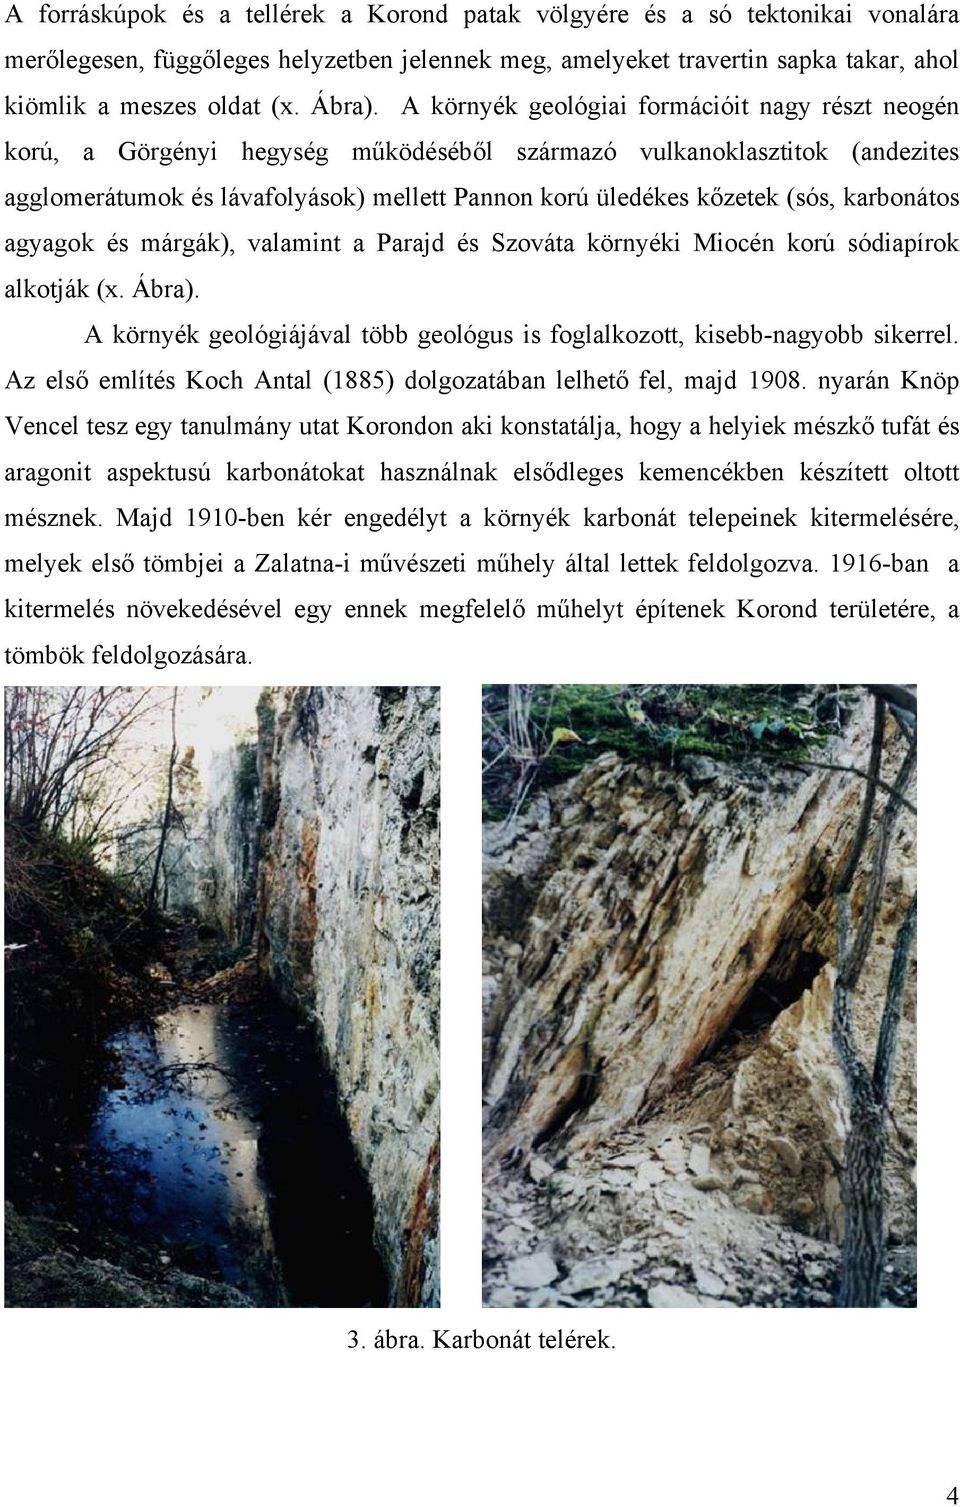 karbonátos agyagok és márgák), valamint a Parajd és Szováta környéki Miocén korú sódiapírok alkotják (x. Ábra). A környék geológiájával több geológus is foglalkozott, kisebb-nagyobb sikerrel.